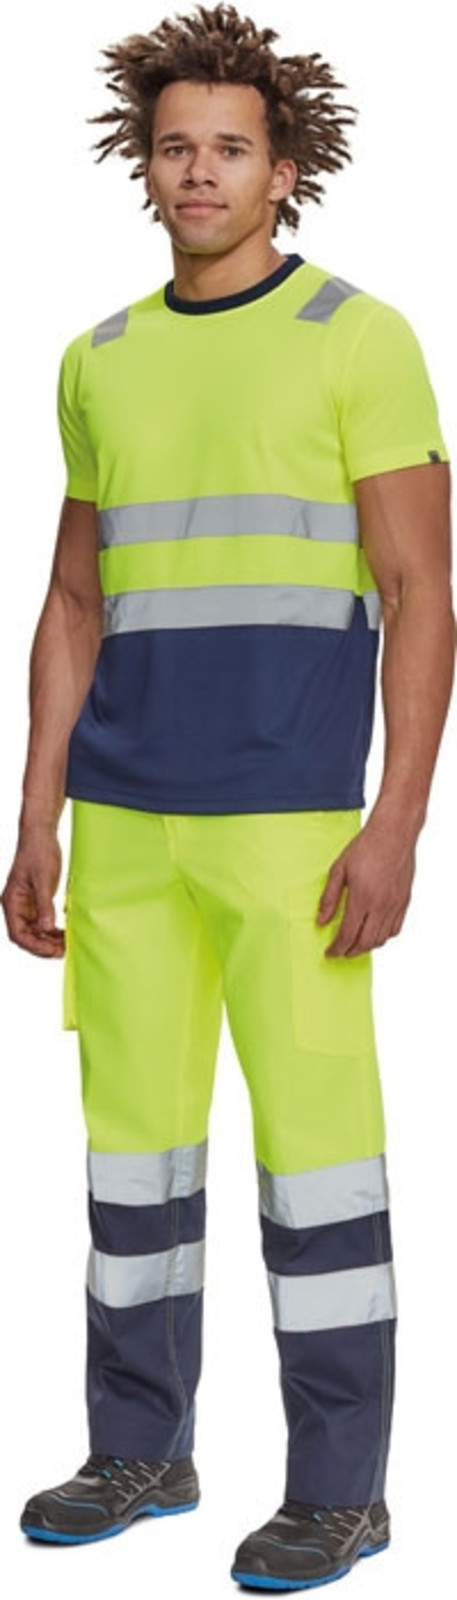 Reflexné tričko Cerva Monzon HV - veľkosť: M, farba: žltá/navy